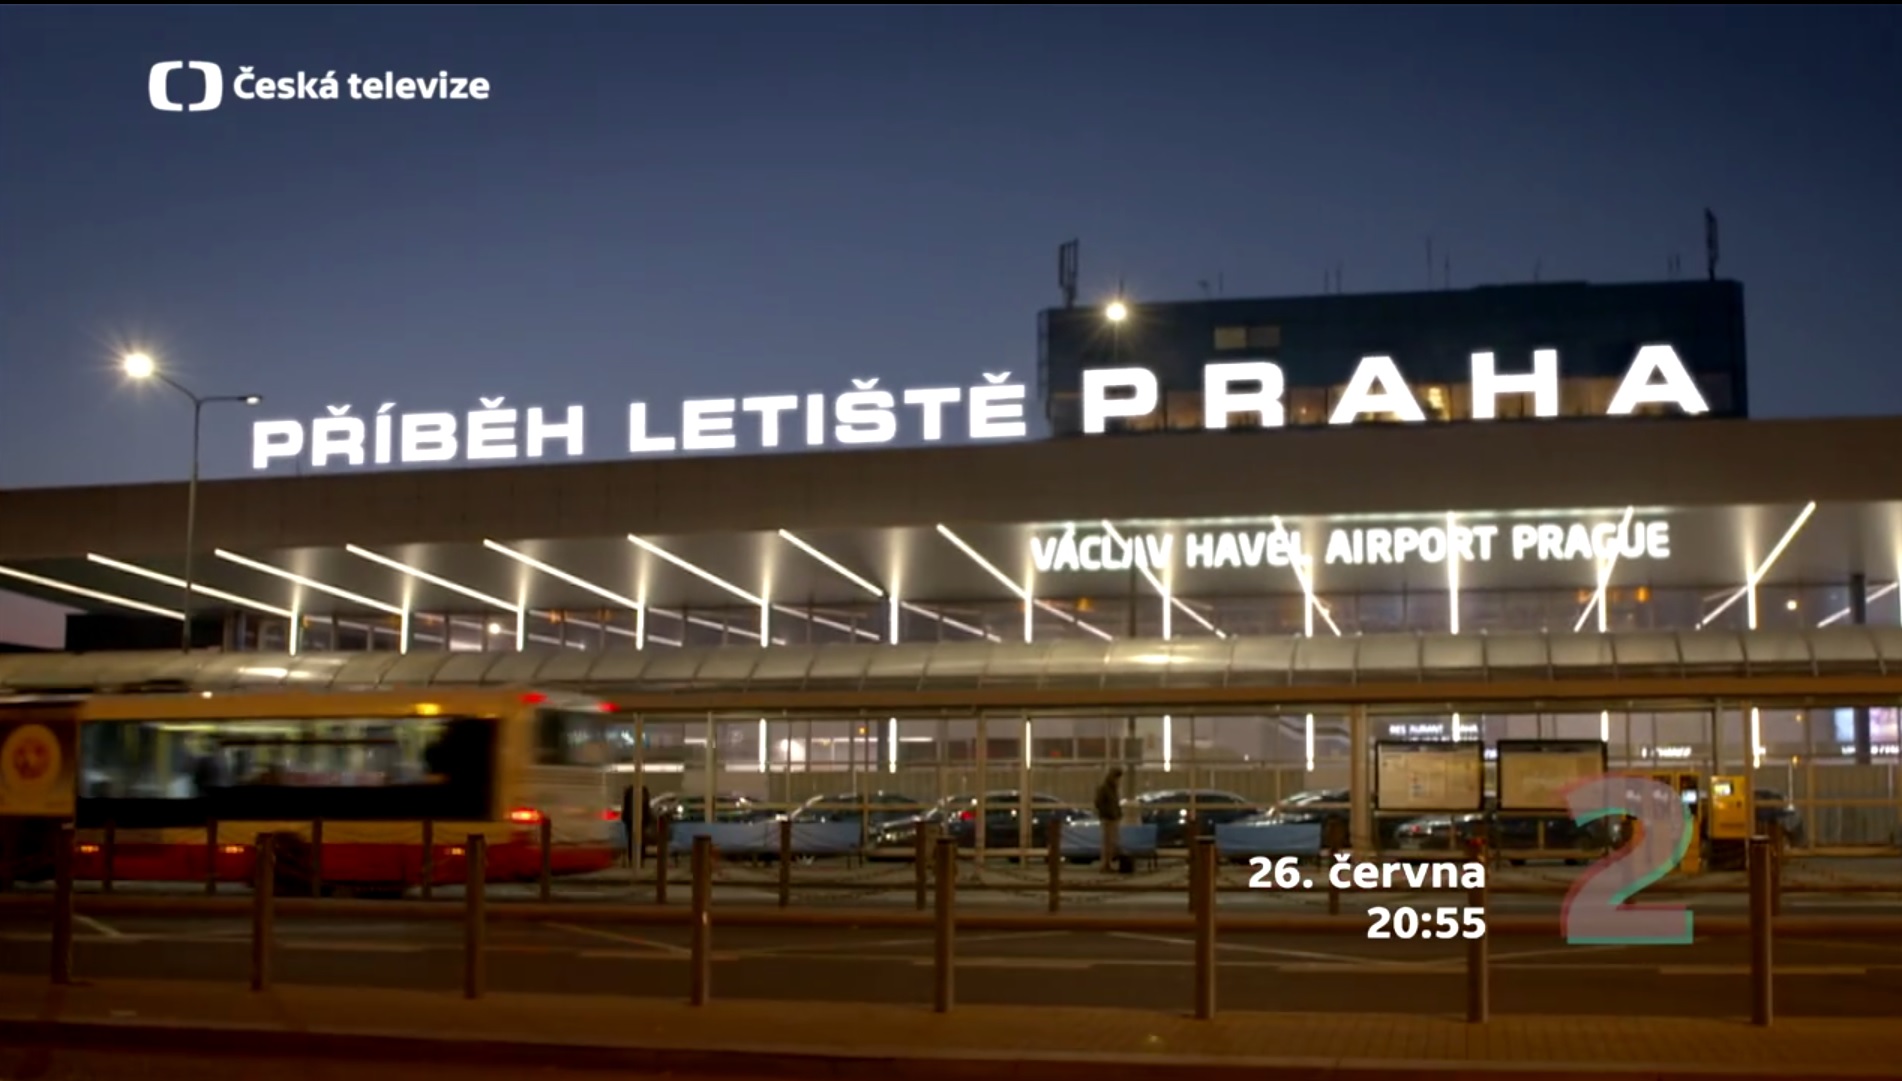 Příběh Letiště Praha Prague Airport Story